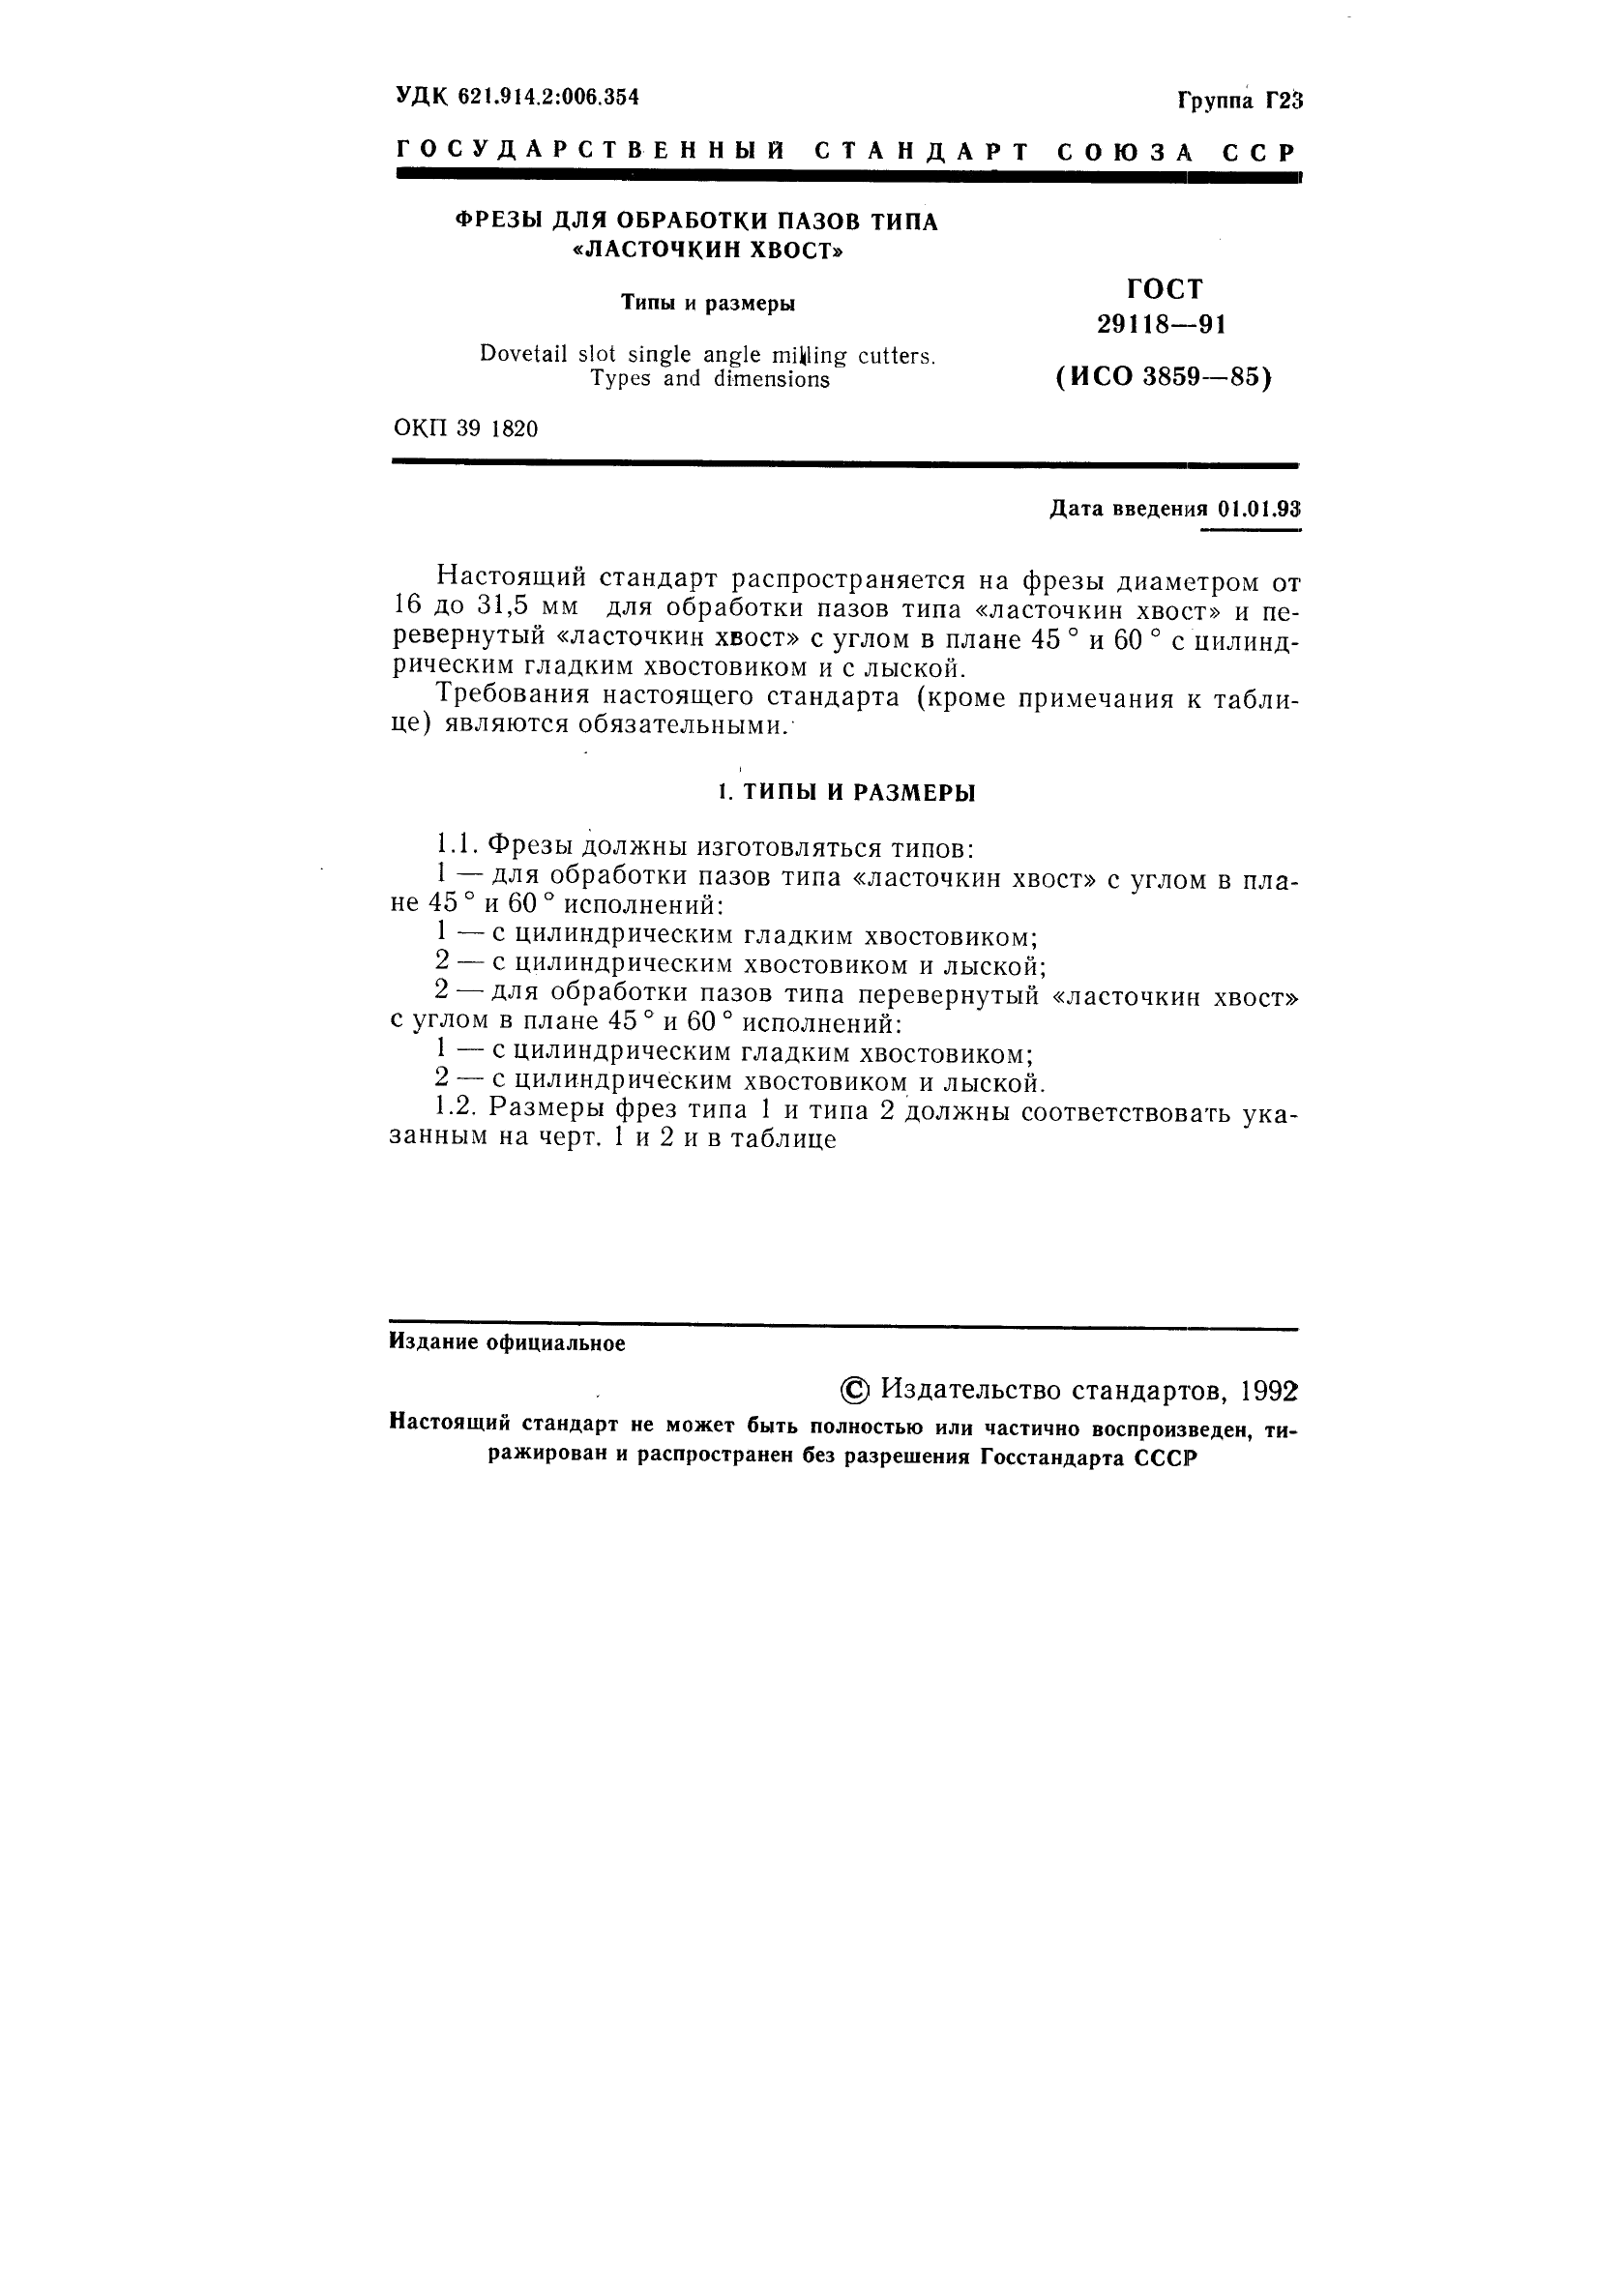 ГОСТ 29118-91 Фрезы для обработки пазов типа 